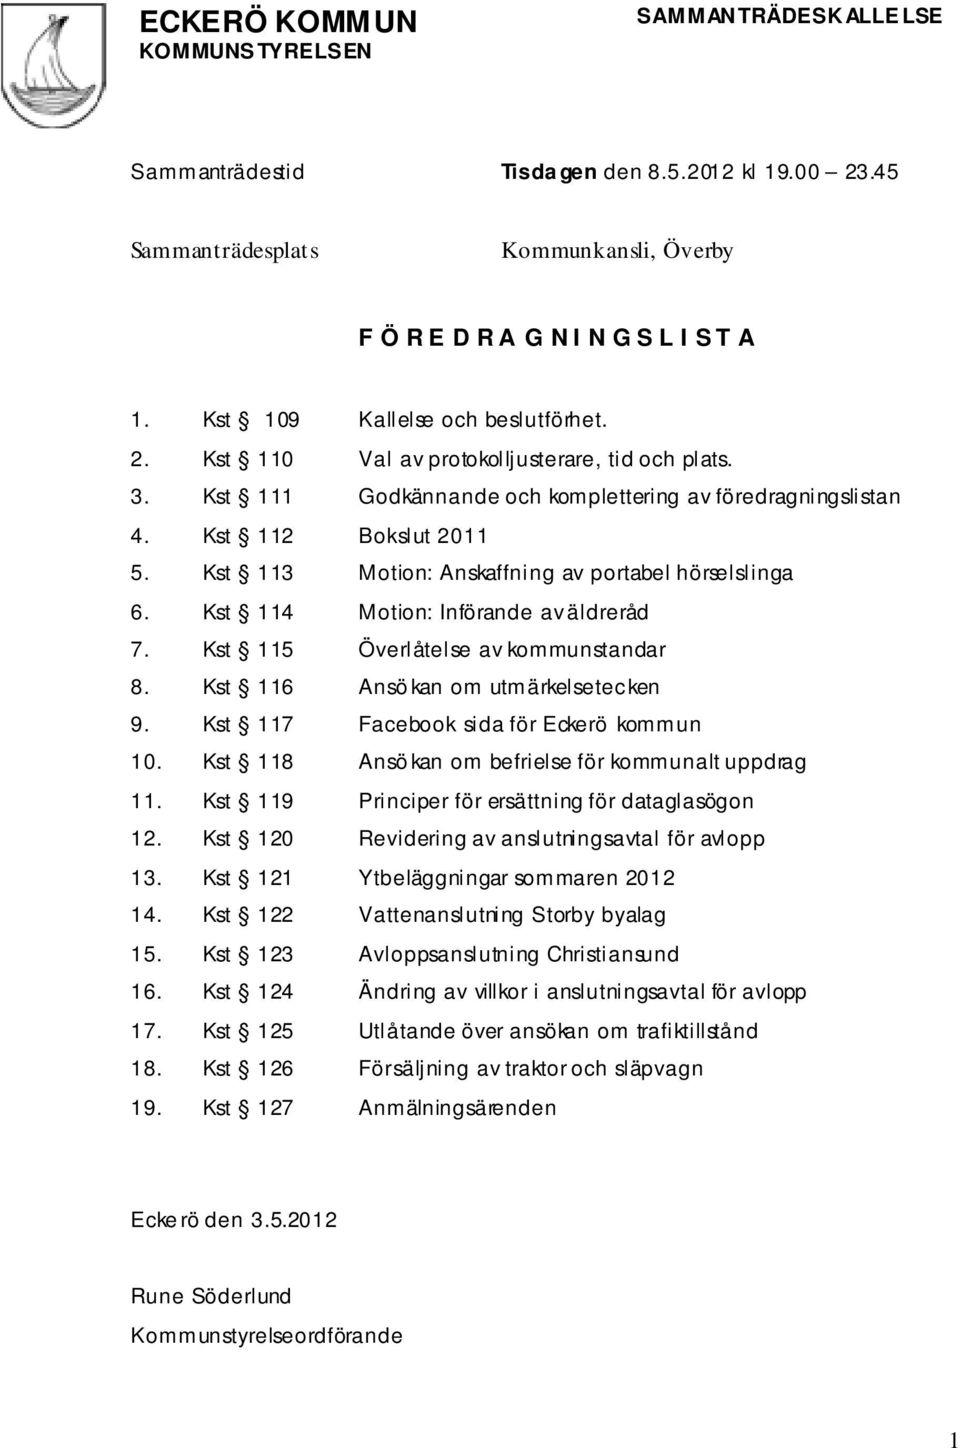 Kst 115 Överlåtelse av kommunstandar 8. Kst 116 Ansö kan om utmärkelsetecken 9. Kst 117 Facebook sida för Eckerö kommun 10. Kst 118 Ansö kan om befrielse för kommunalt uppdrag 11.